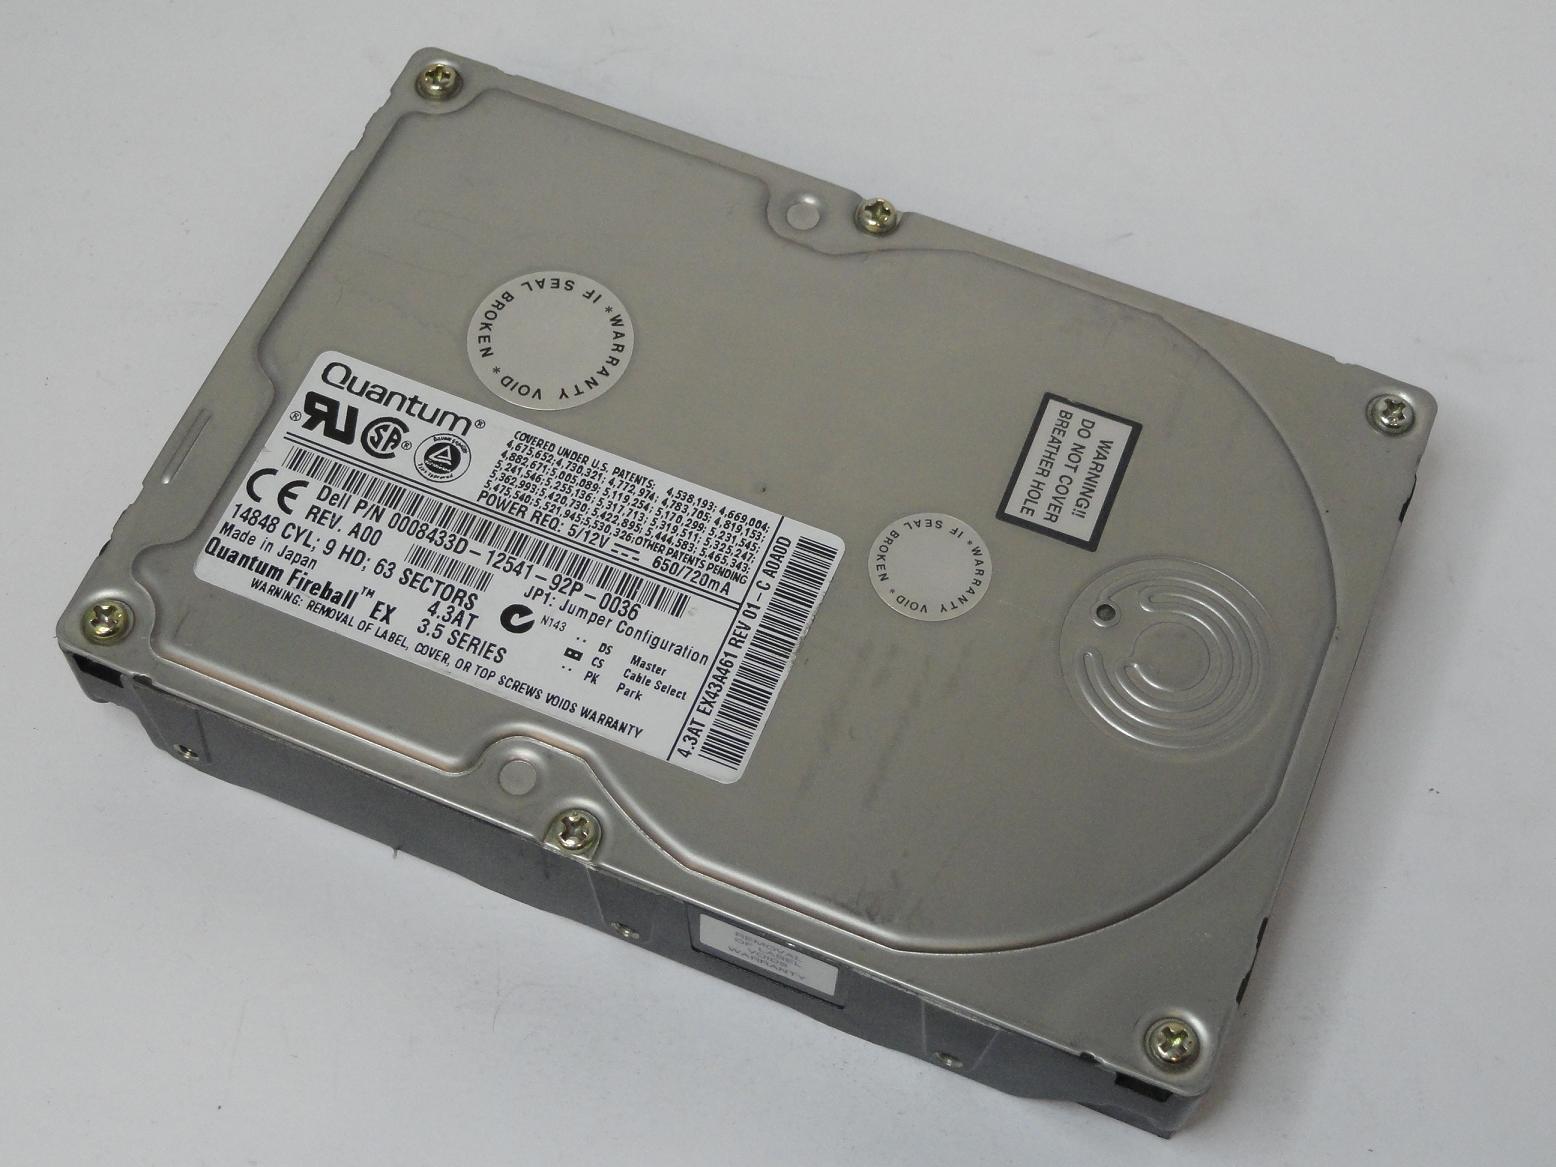 EX43A461 - Quantum 4.3GB IDE 5400rpm 3.5in HDD - Refurbished